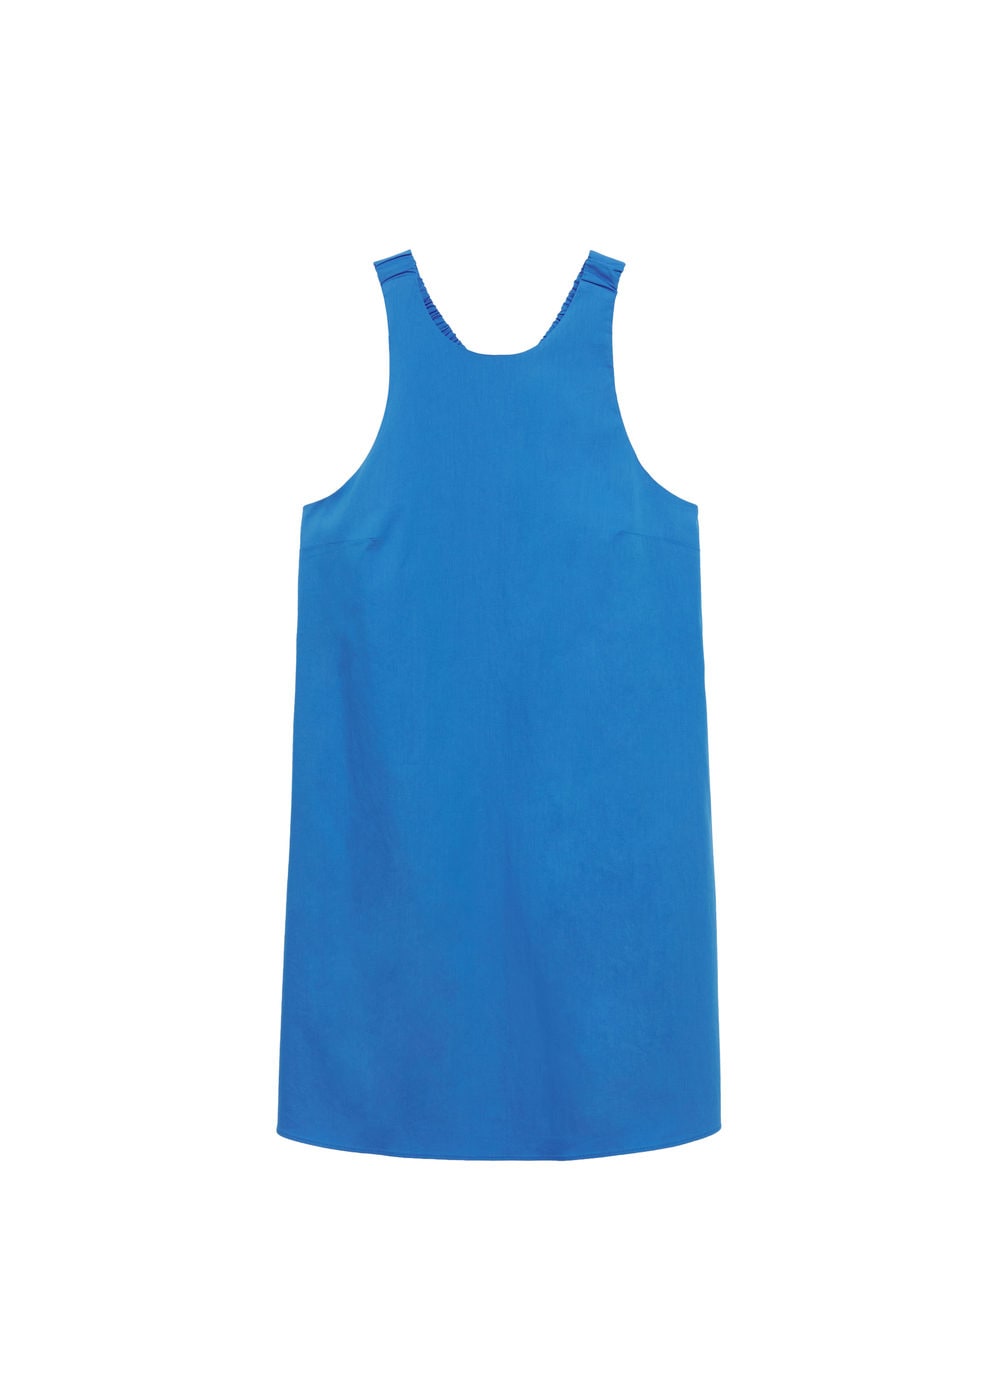 Odzież Kobiety MANGO Letnia sukienka VITA w kolorze Królewski Błękitm 